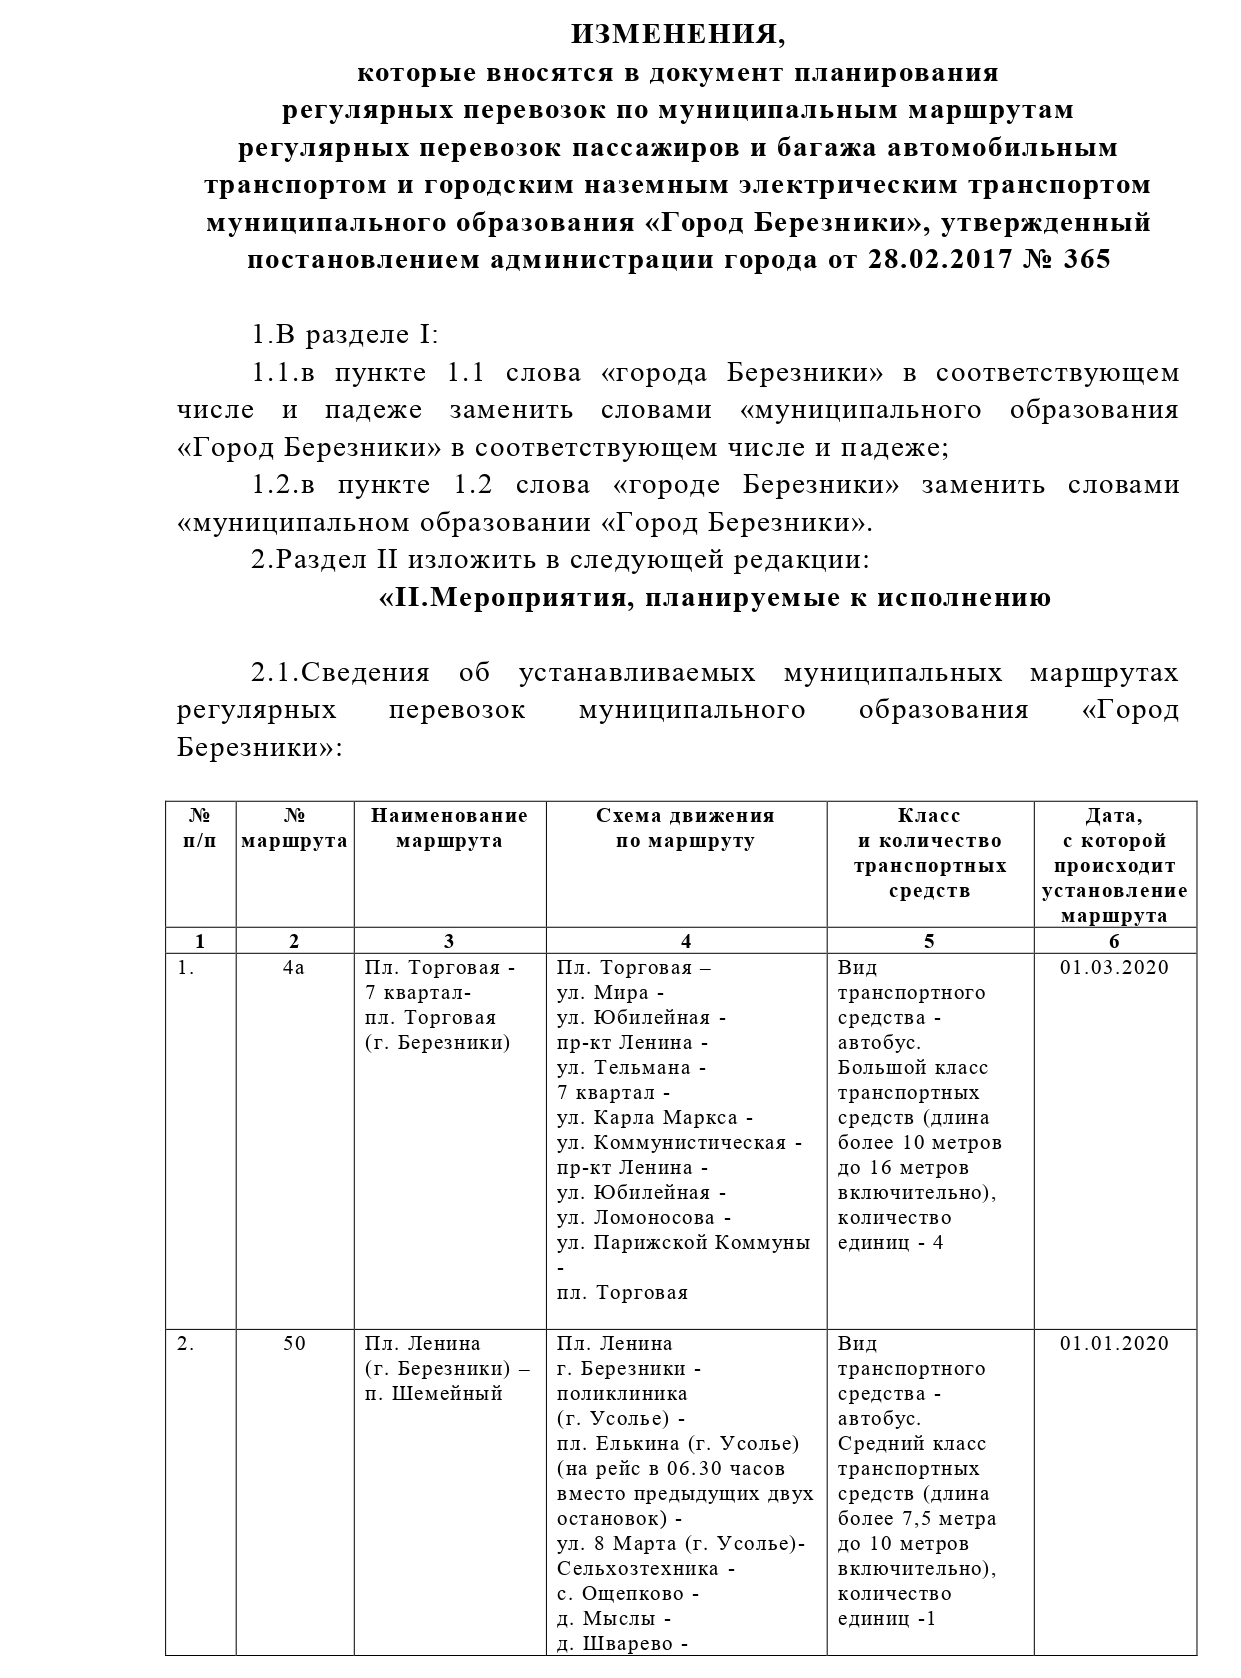 Документ планирования регулярных перевозок по межмуниципальным маршрутам смоленской области